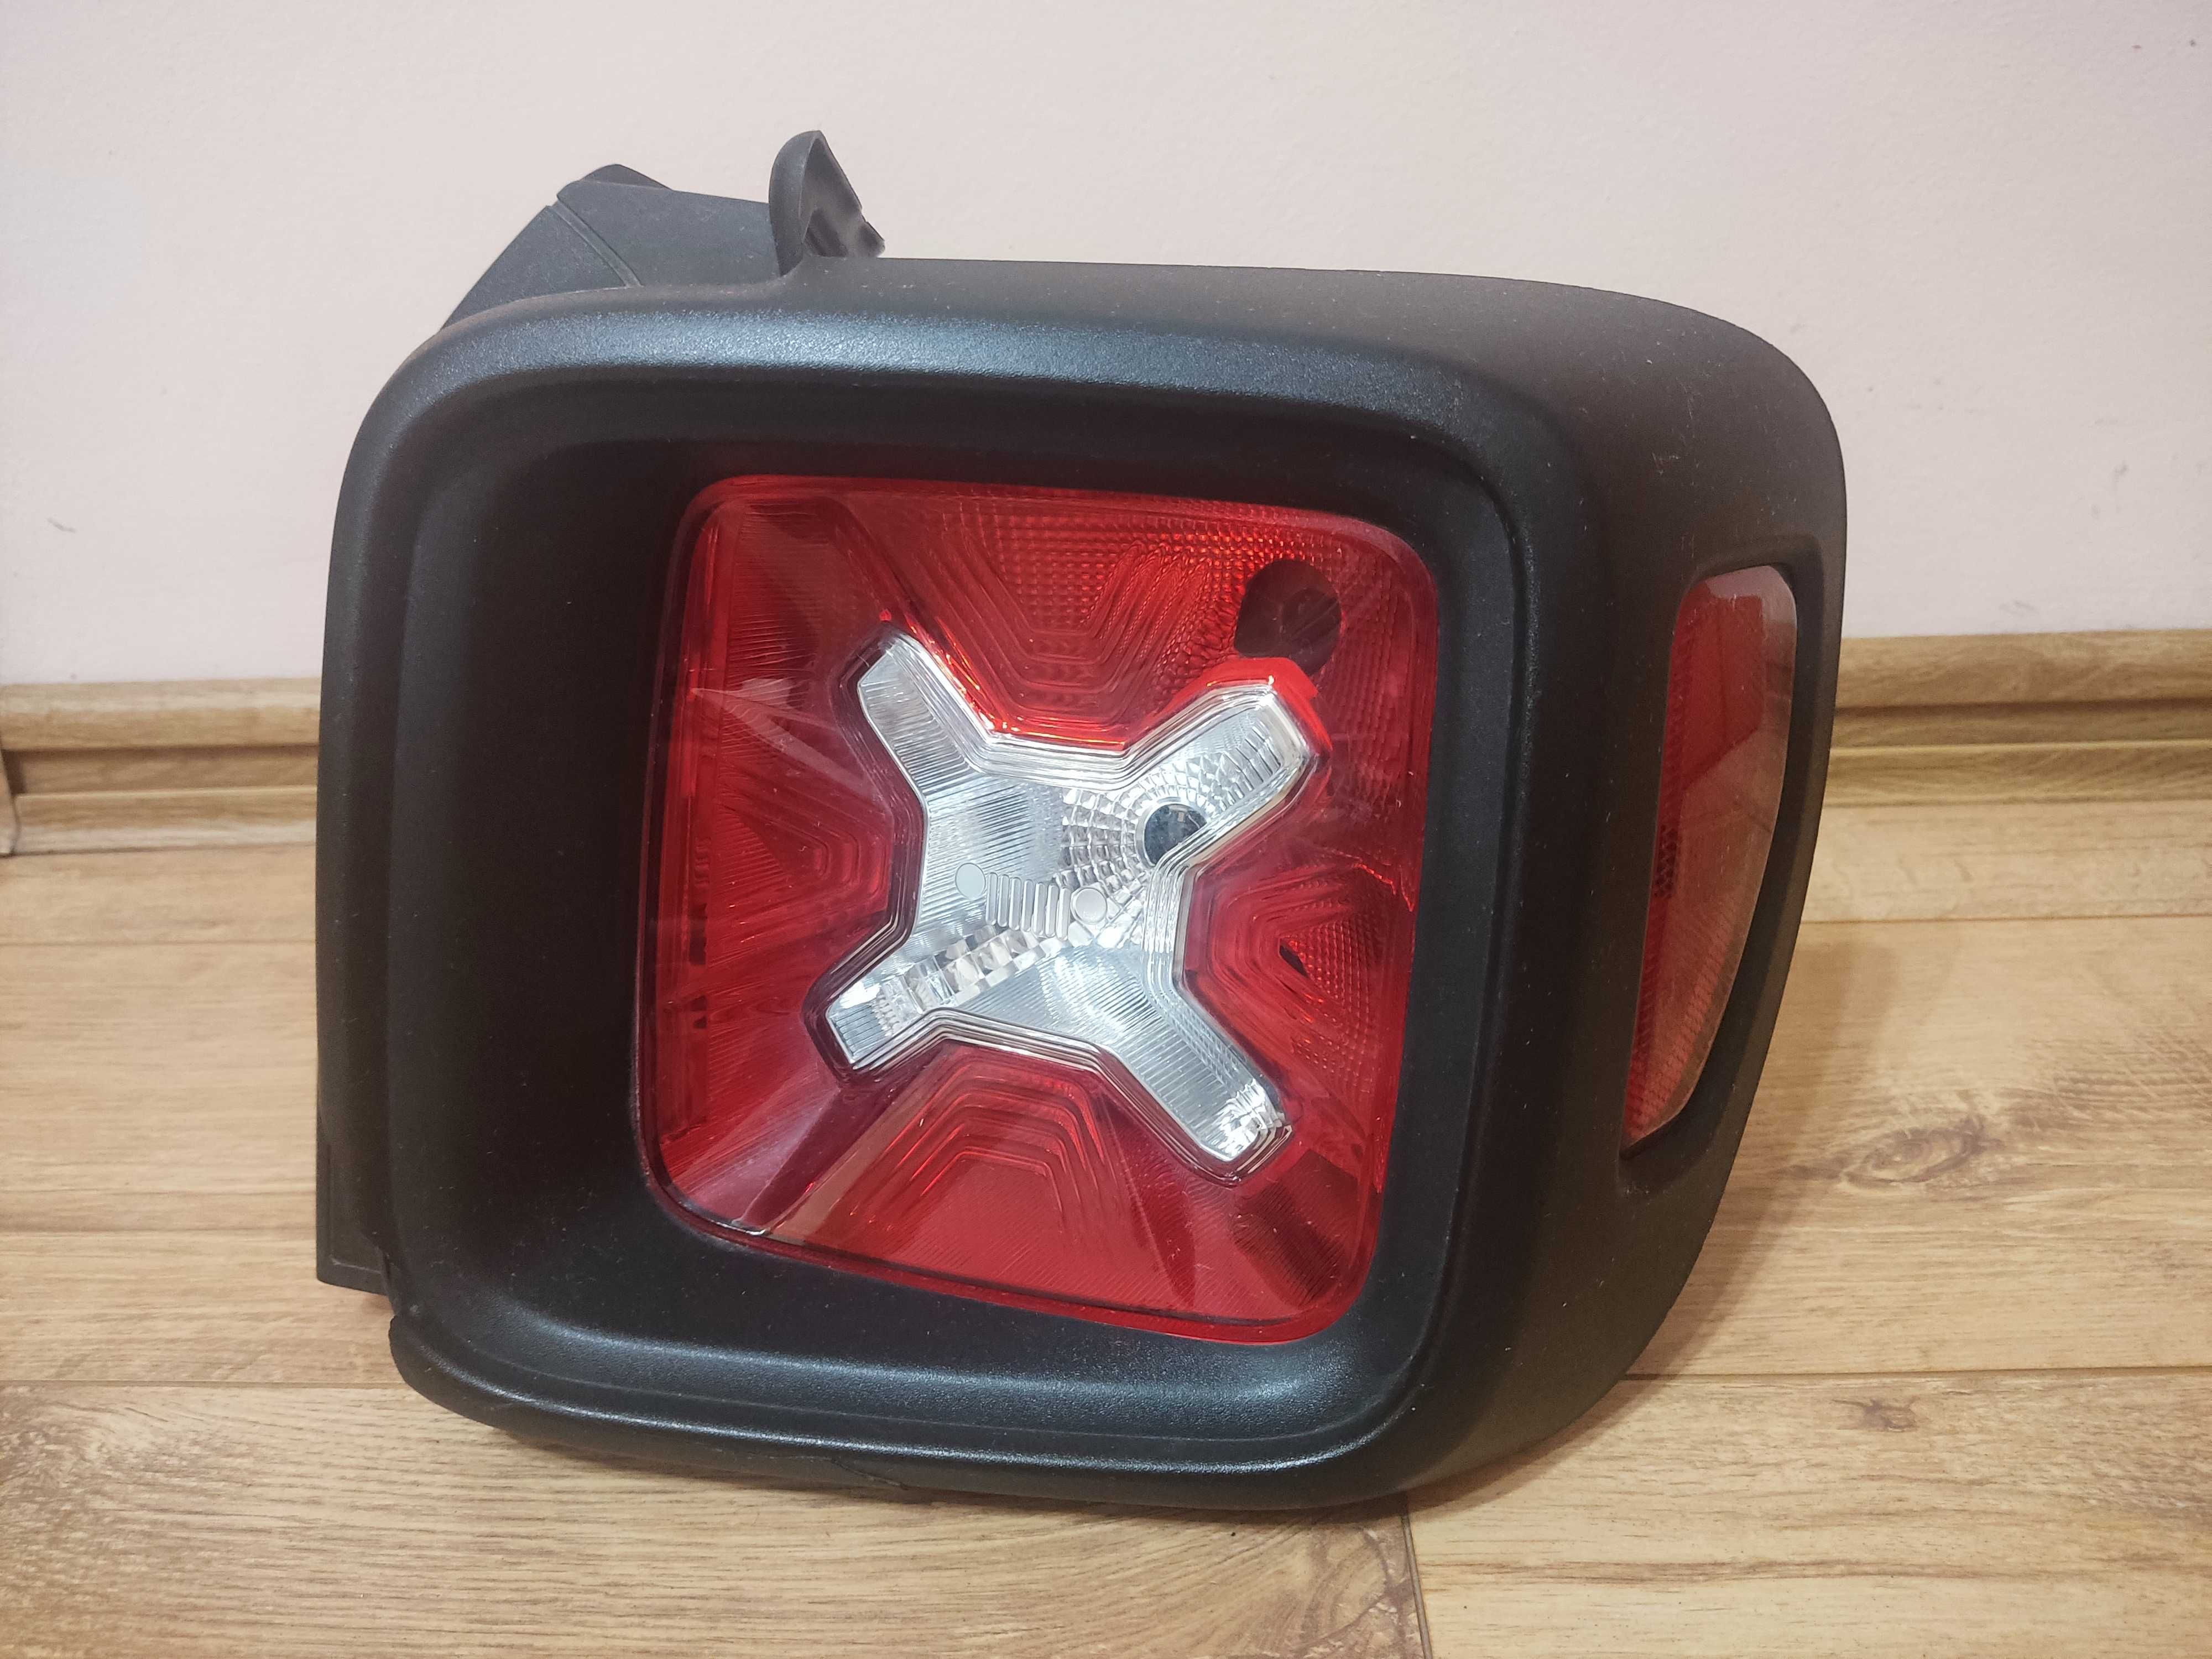 Оригинальный задний, правый фонарь Jeep Renegade с повреждением